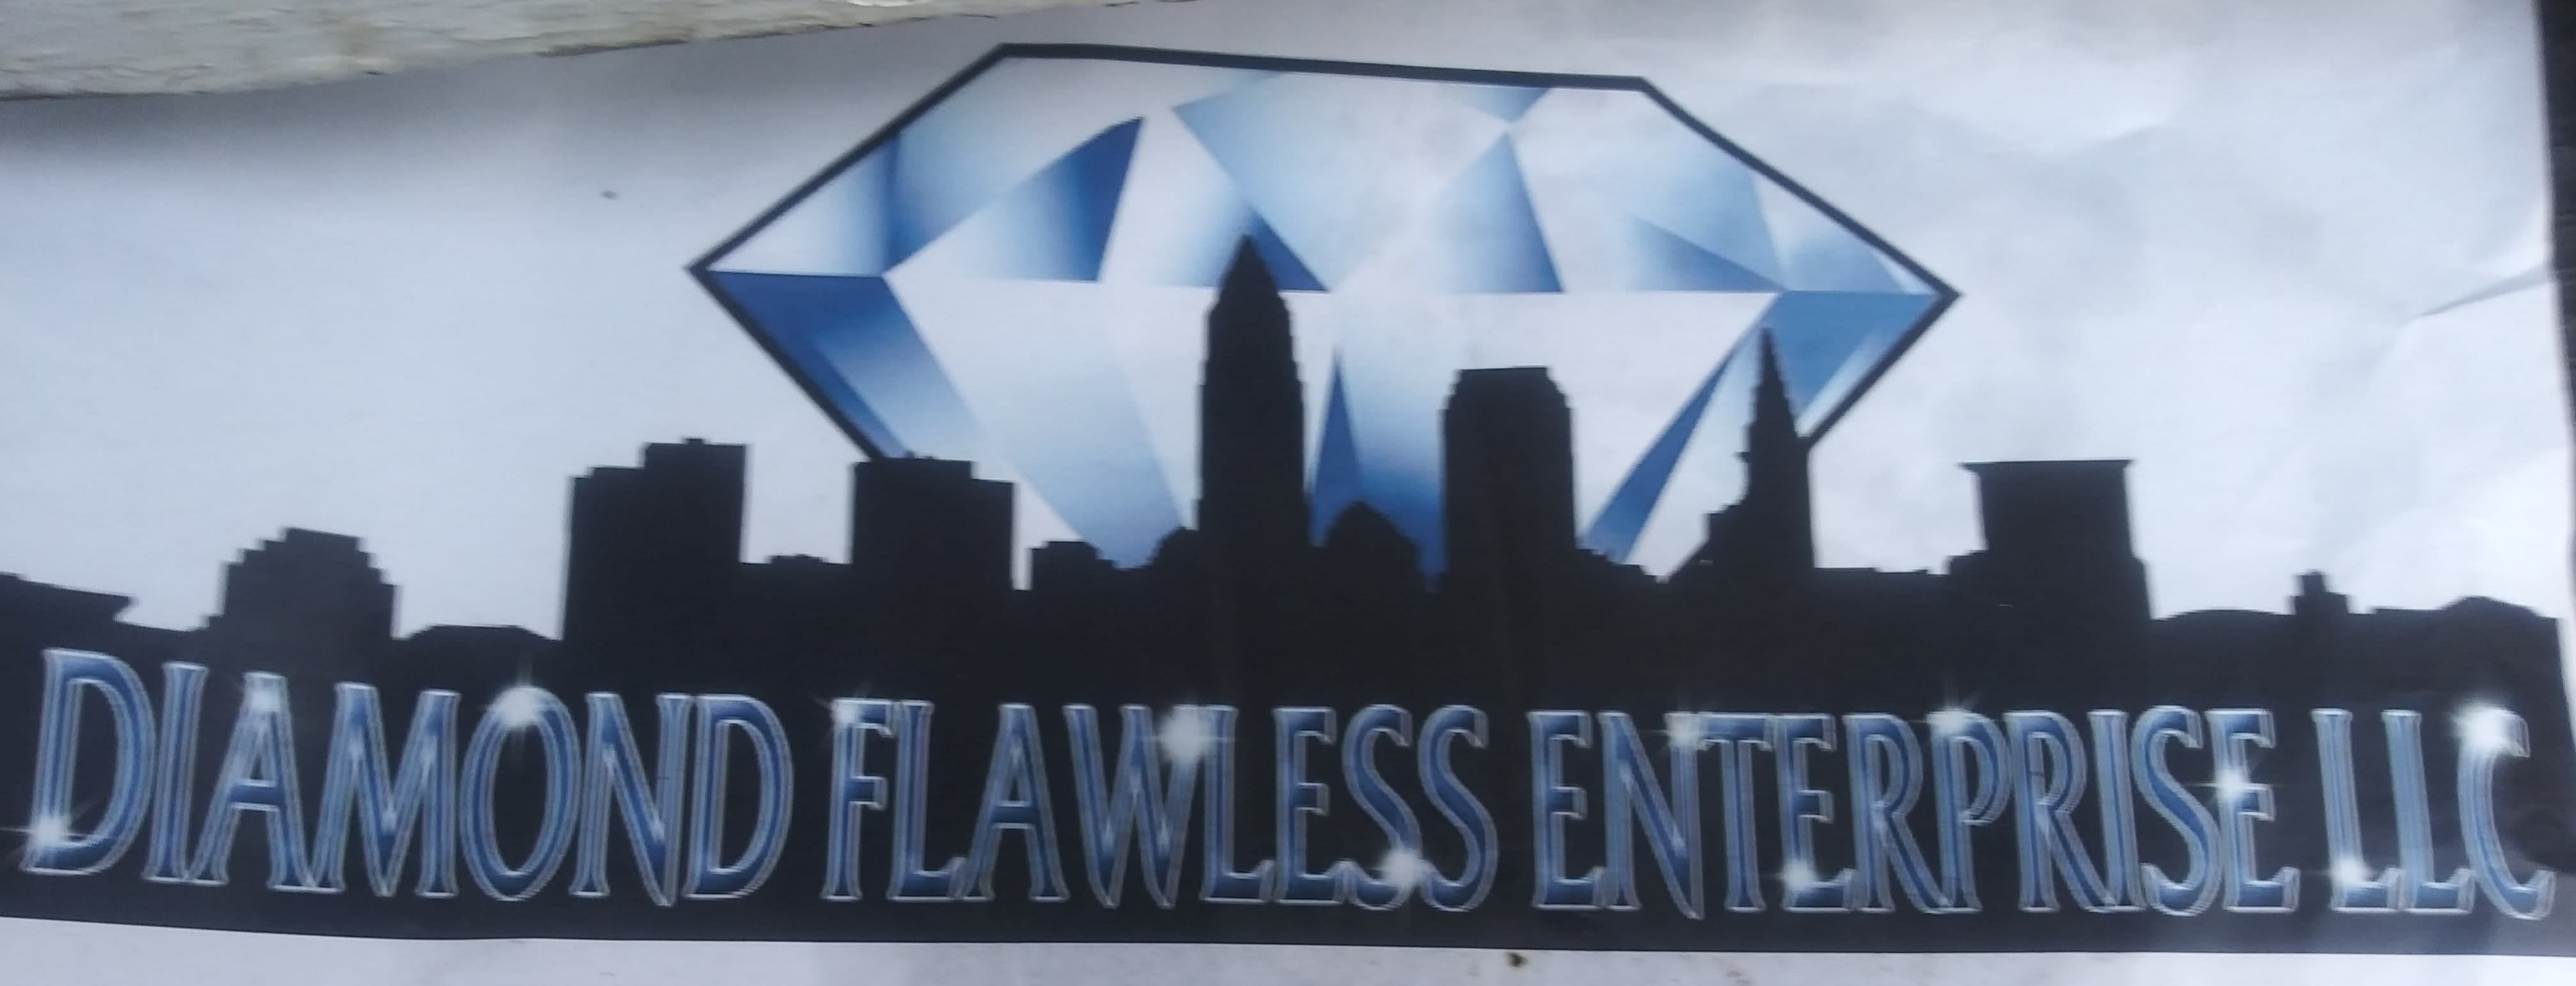 Diamond Flawless Enterprise